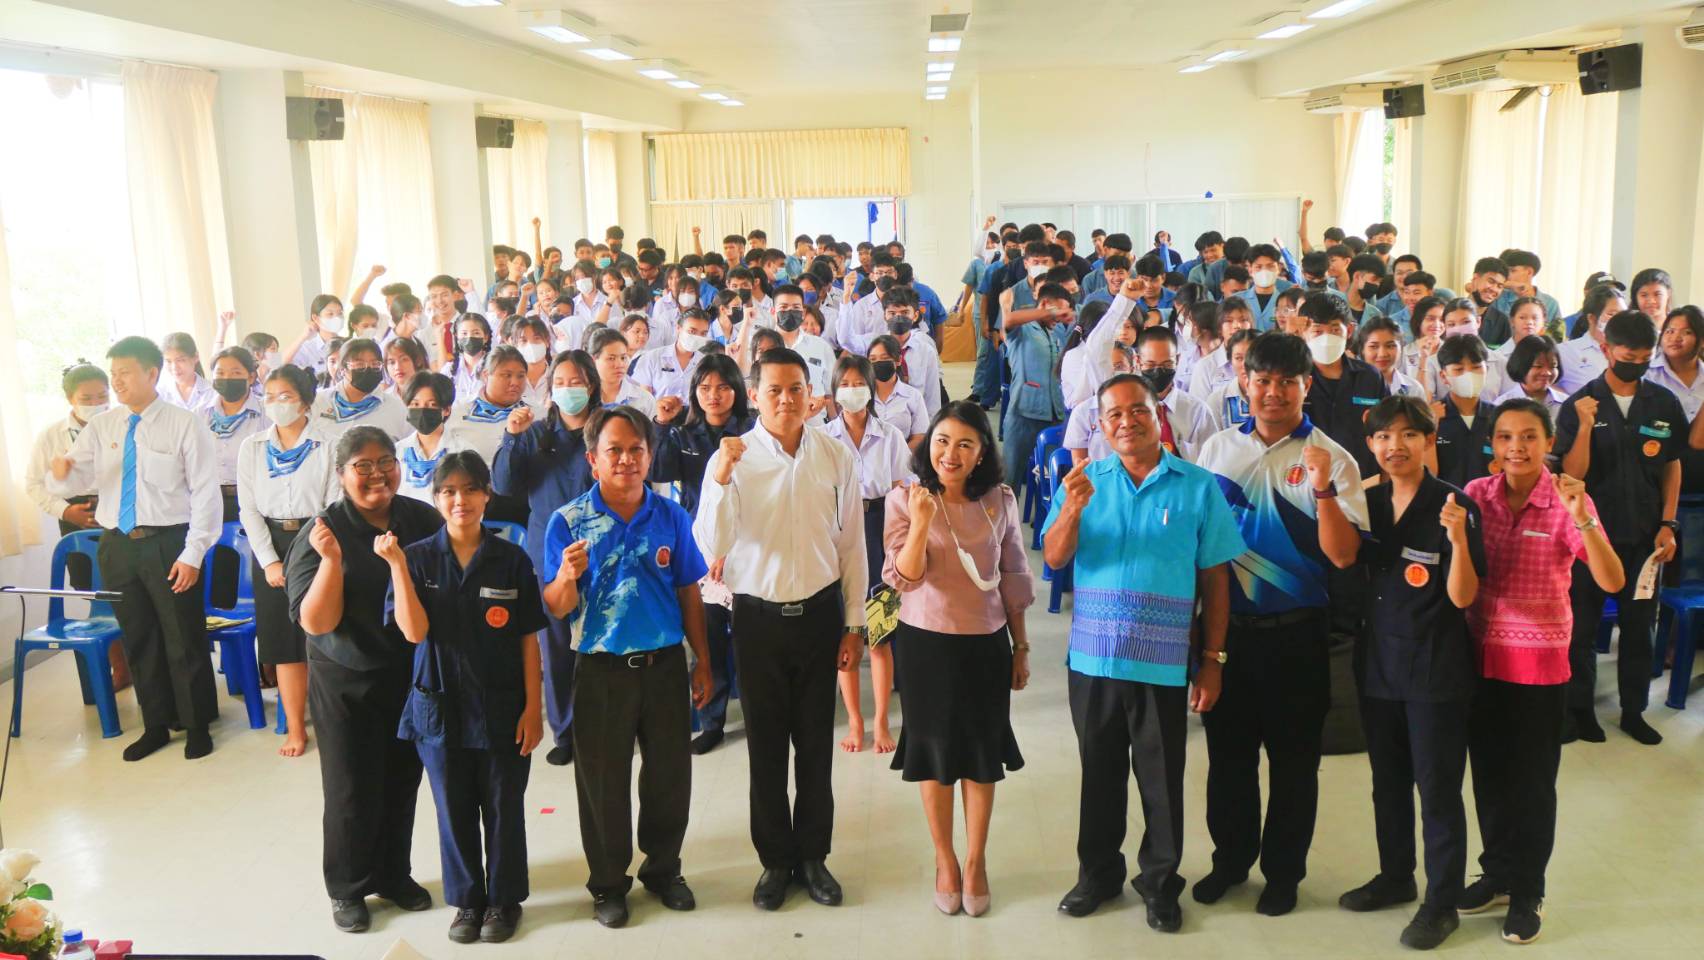 โครงการเตรียมความพร้อมเข้าสู่สังคมผู้สูงอายุอย่างมีคุณภาพ รุ่นที่ 4 (จำนวน 220 คน) ประปีงบประมาณ 2566 ณ วิทยาลัยเทคนิคพัทยา จังหวัดชลบุรี